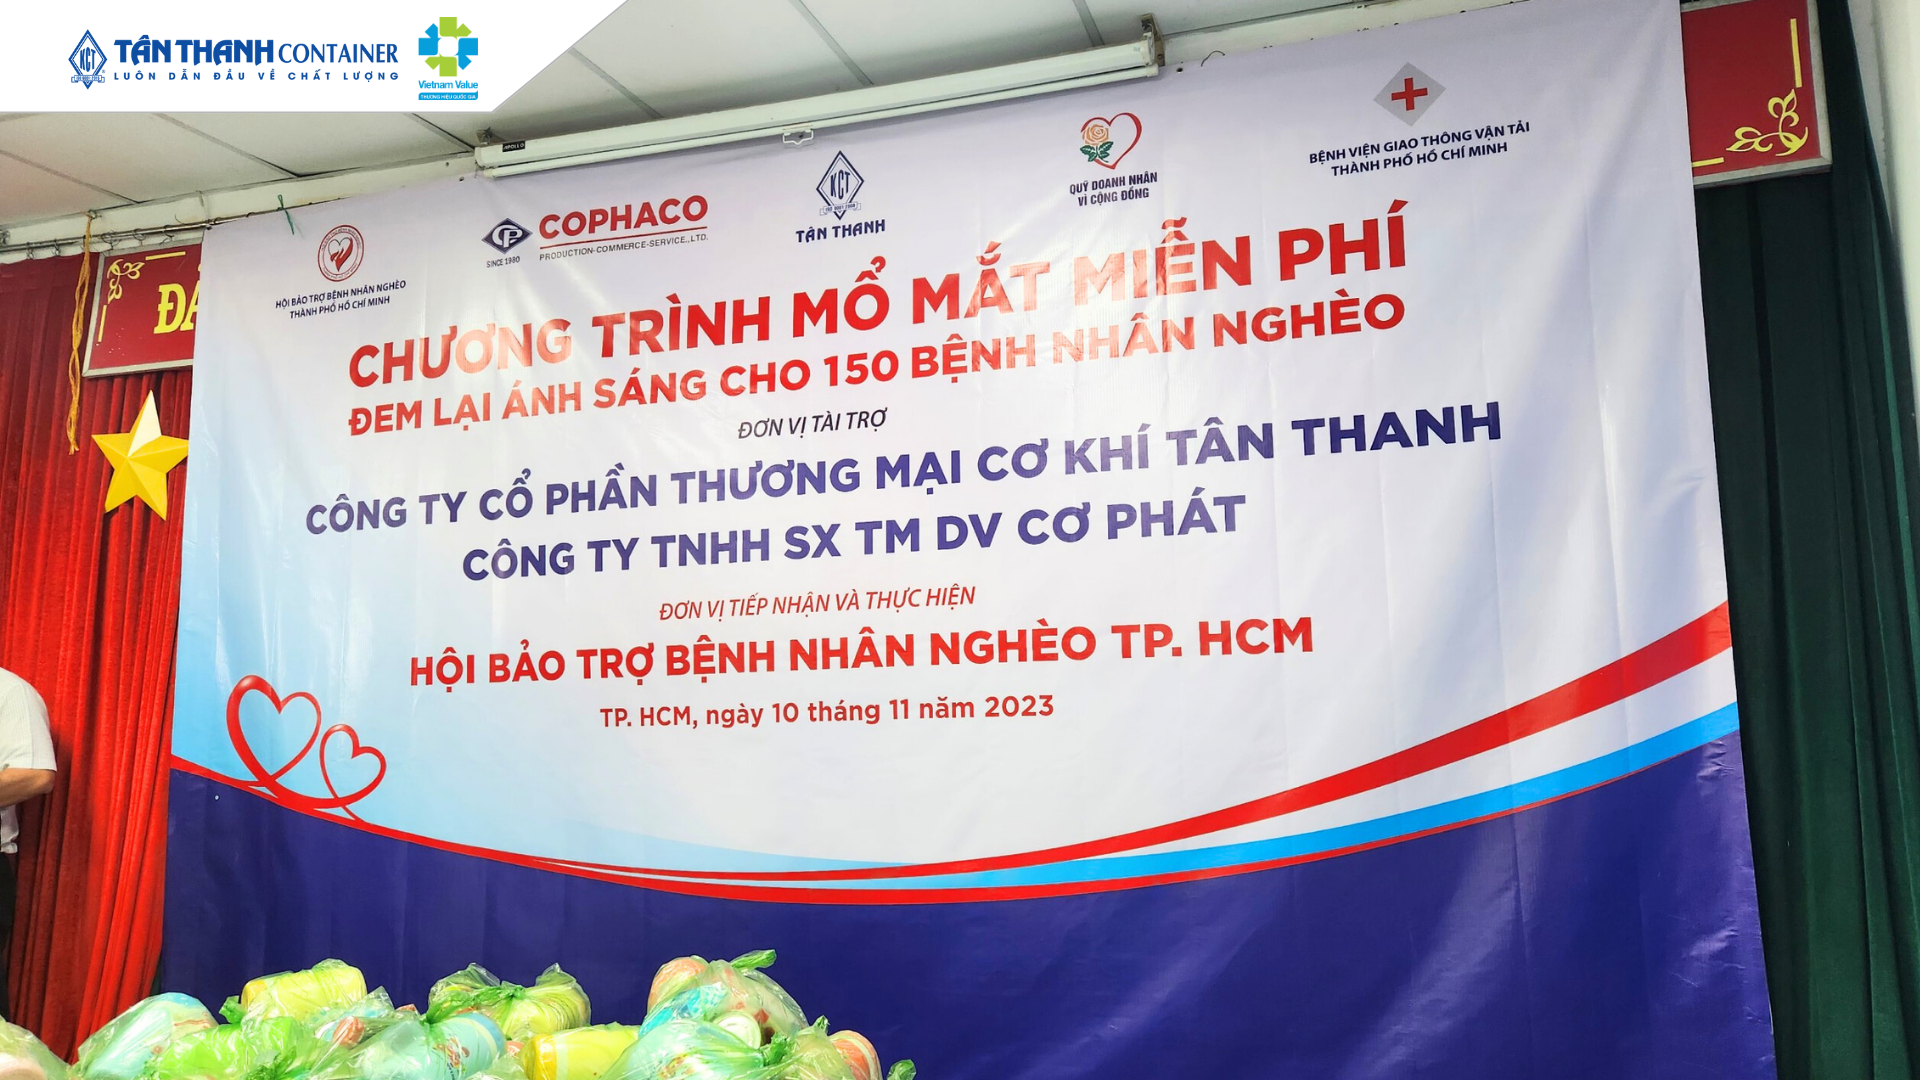 Tân Thanh Container tài trợ miễn phí phẫu thuật mắt cho 150 bệnh nhân nghèo